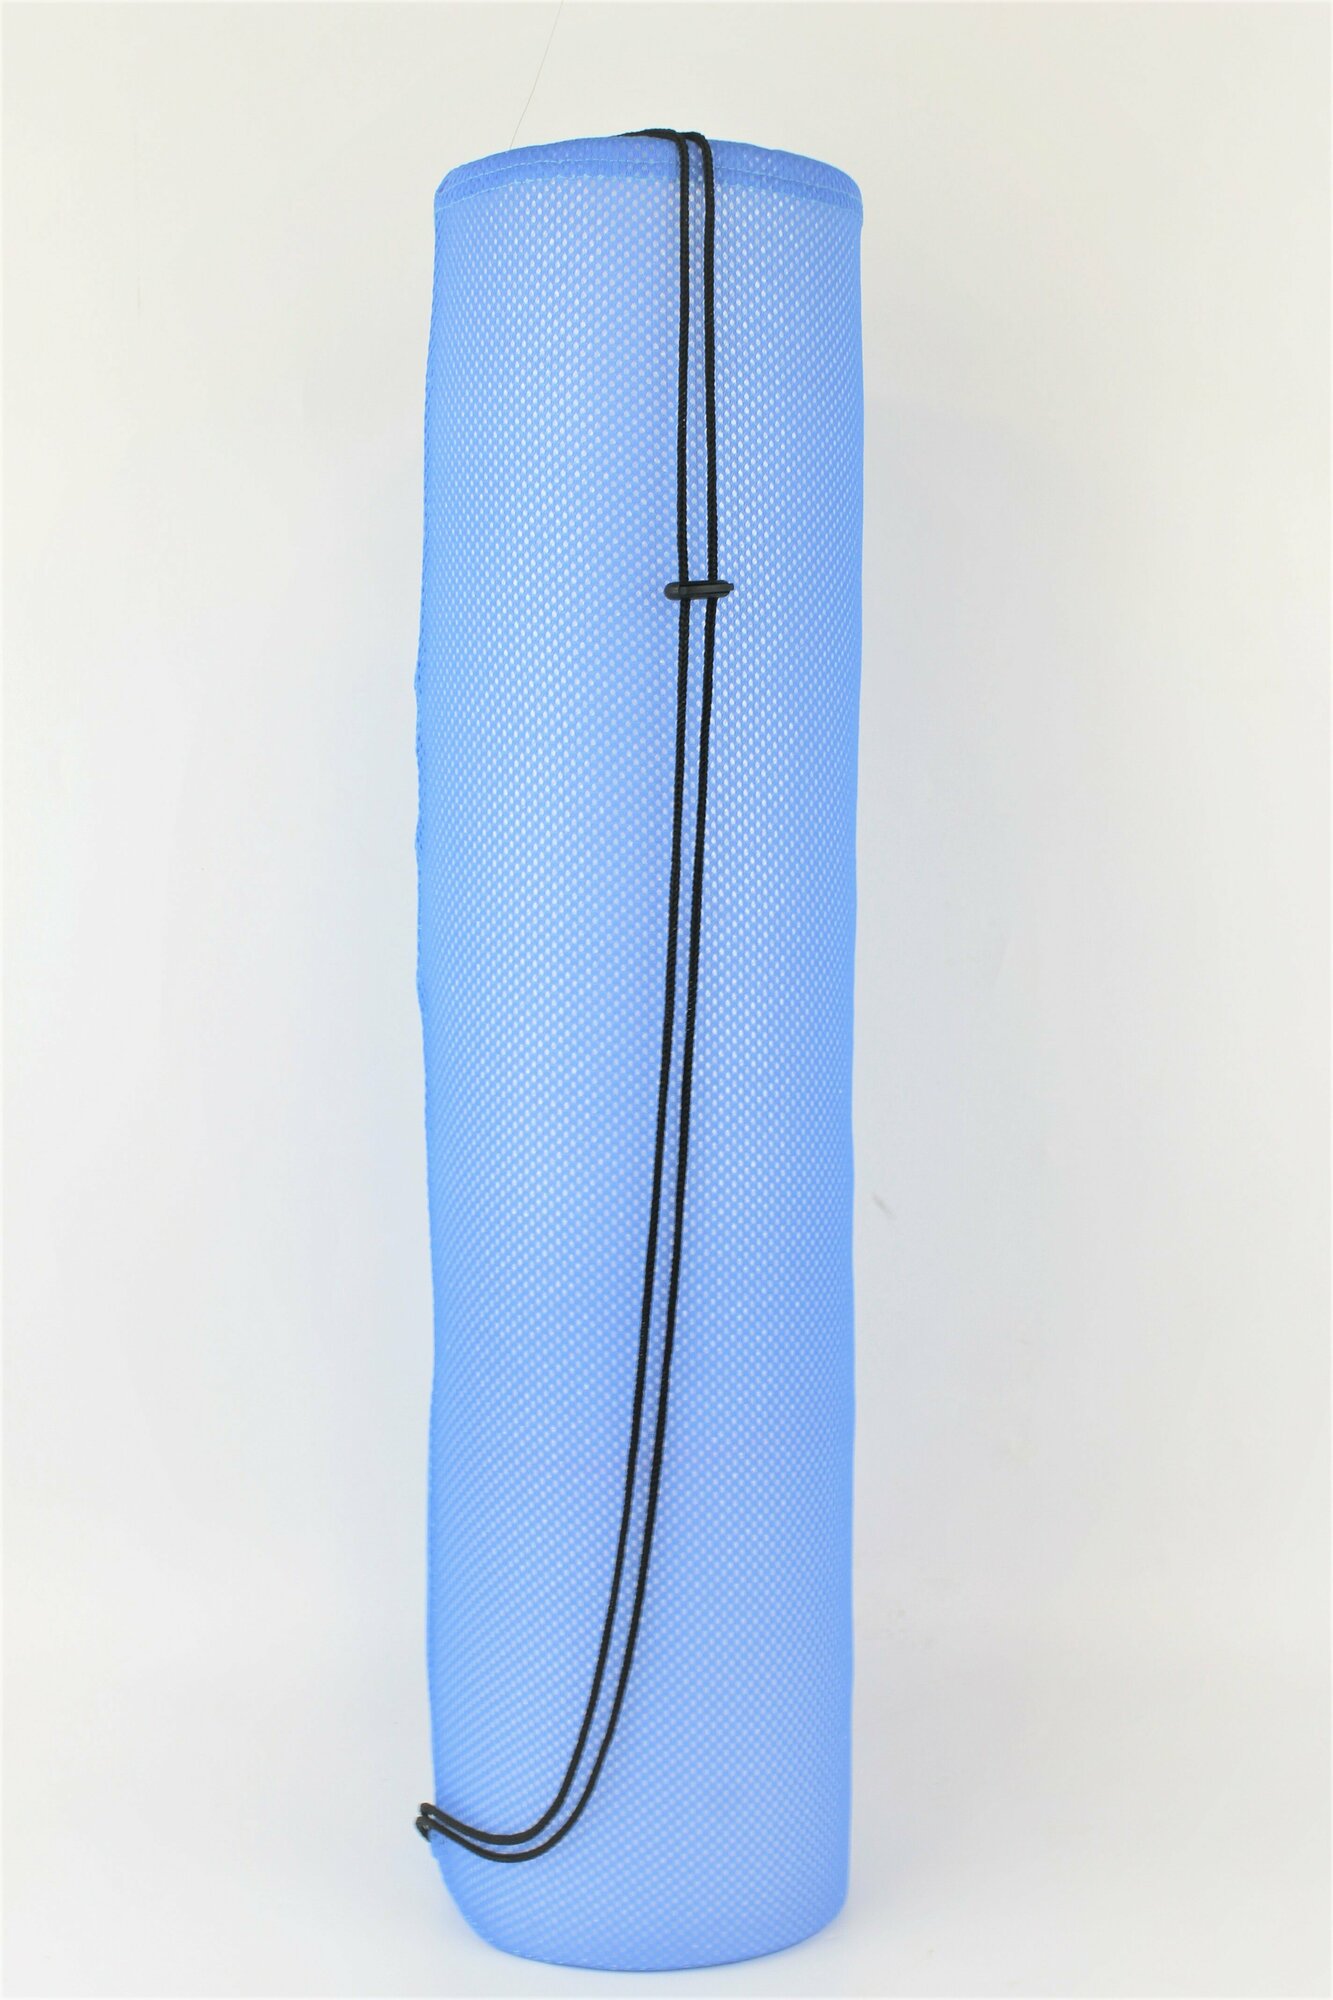 Чехол для гимнастического коврика производство Bf-01 (синий)